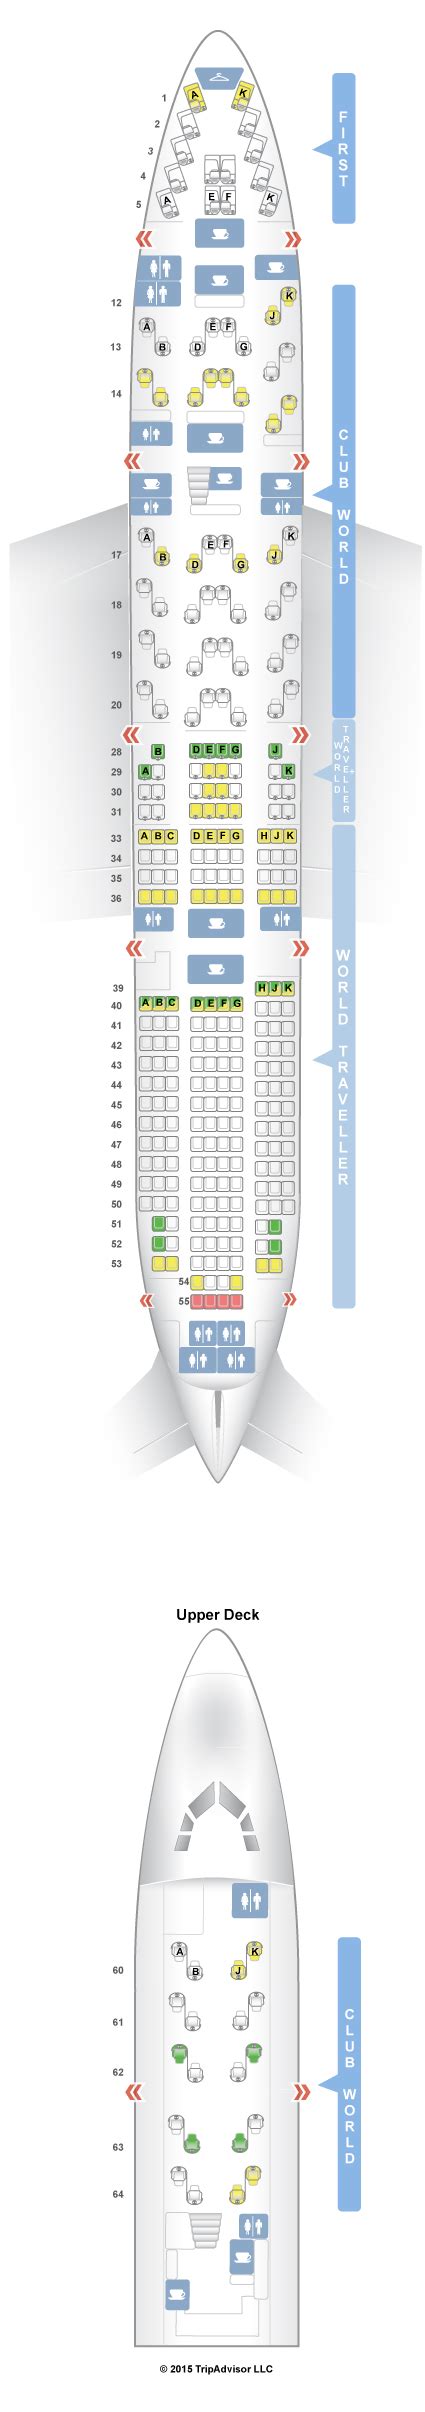 Seatguru Seat Map British Airways Boeing 747 400 744 V2